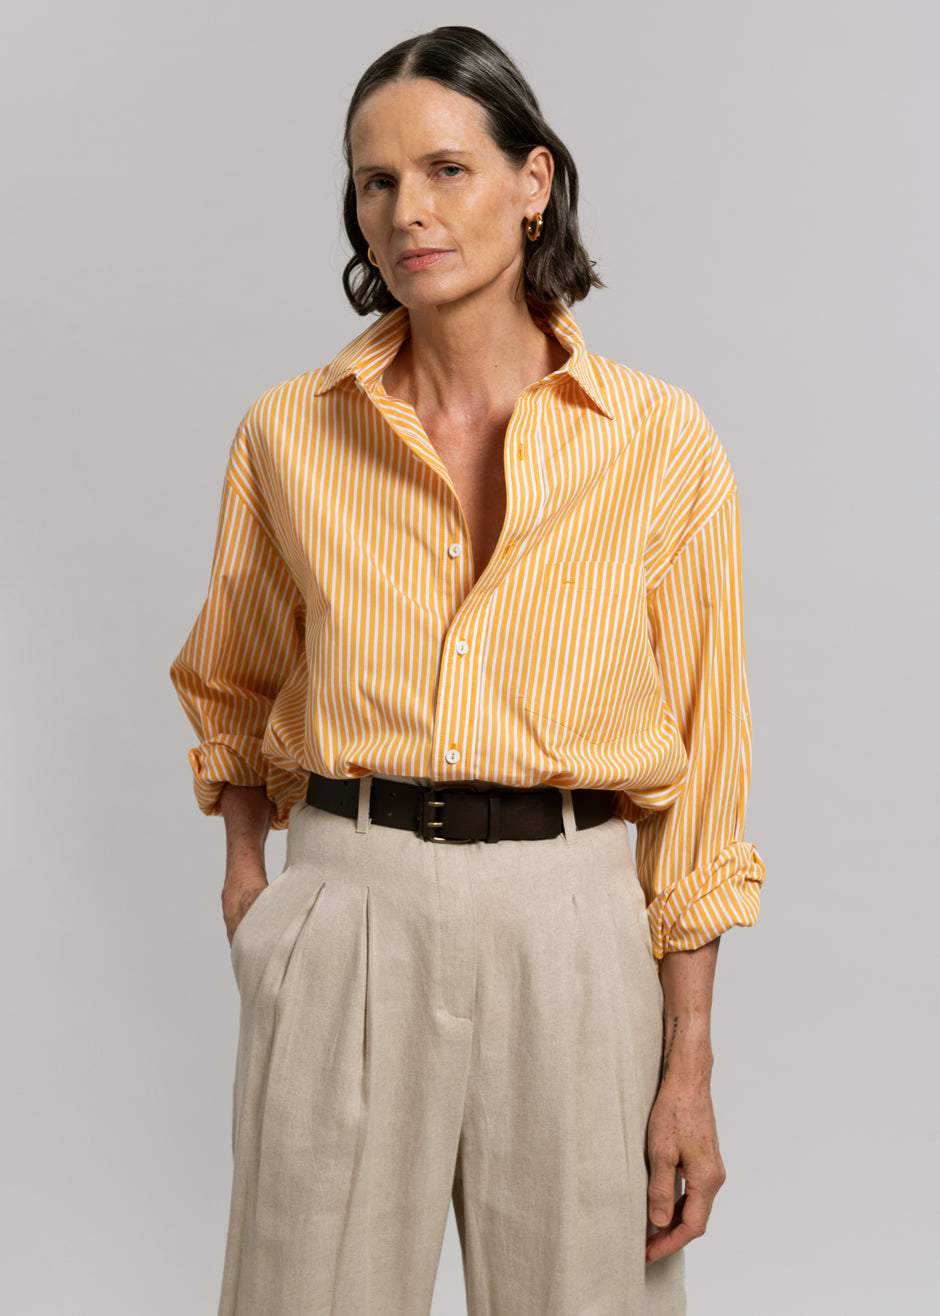 Matteau Classic Stripe Shirt - Soleil